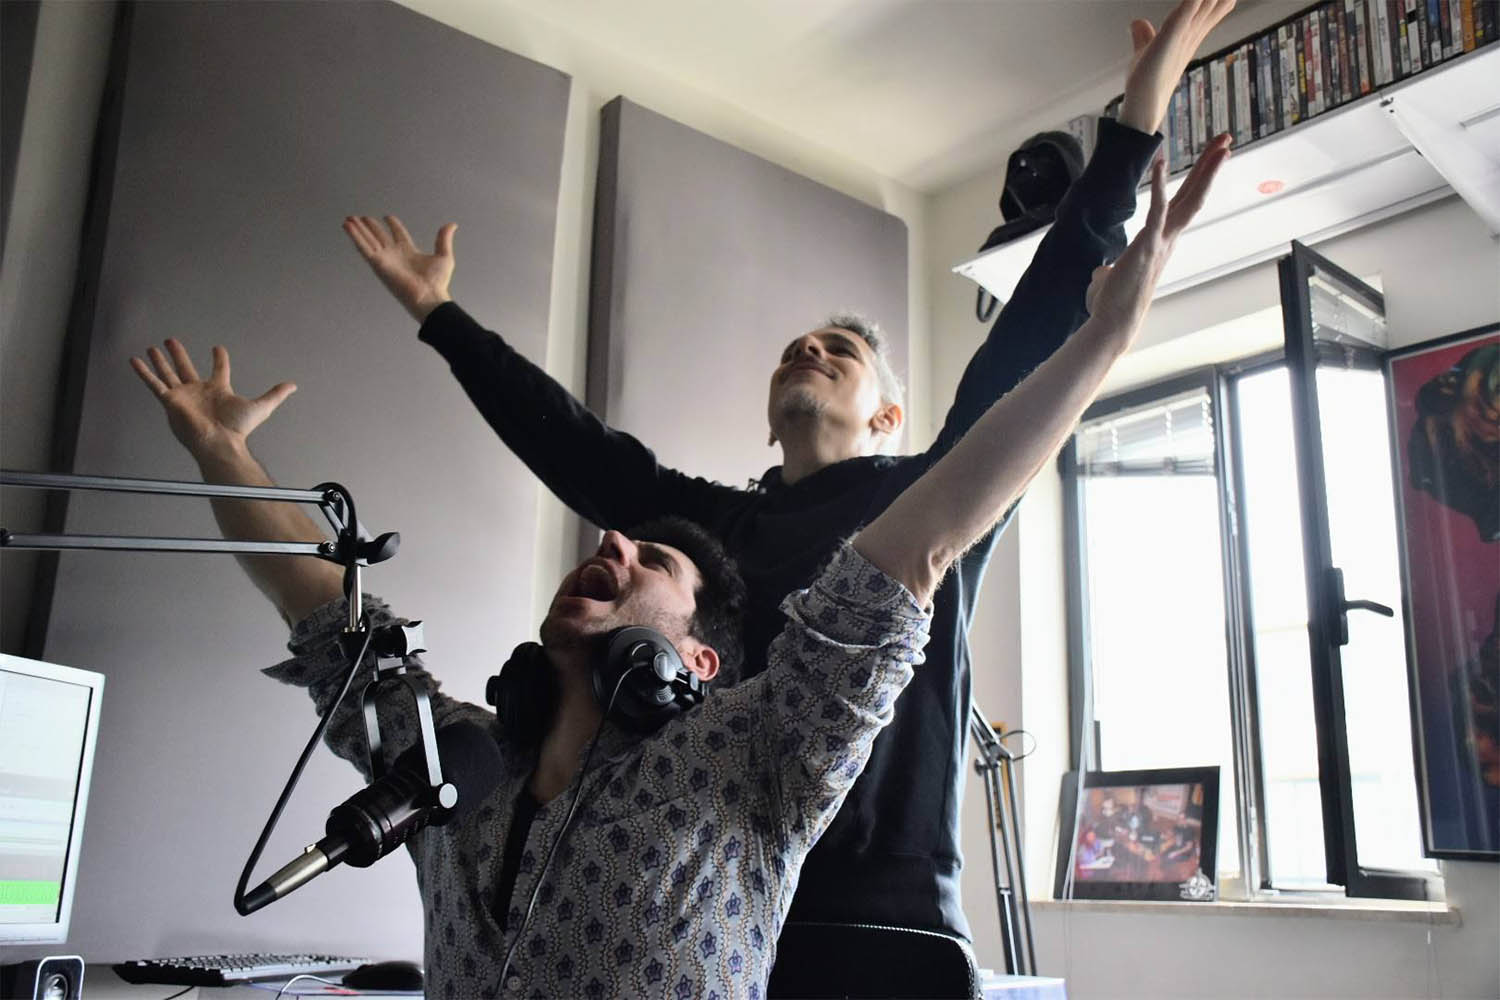 קוואמי (עומד) ואורי זר אביב באולפן "רדיו הקצה". "המיינסטרים נוטה להיתקע במקום, באלטרנטיבה אפשר כל הזמן להתחדש" (צילום: מלכה פינקלשטיין)